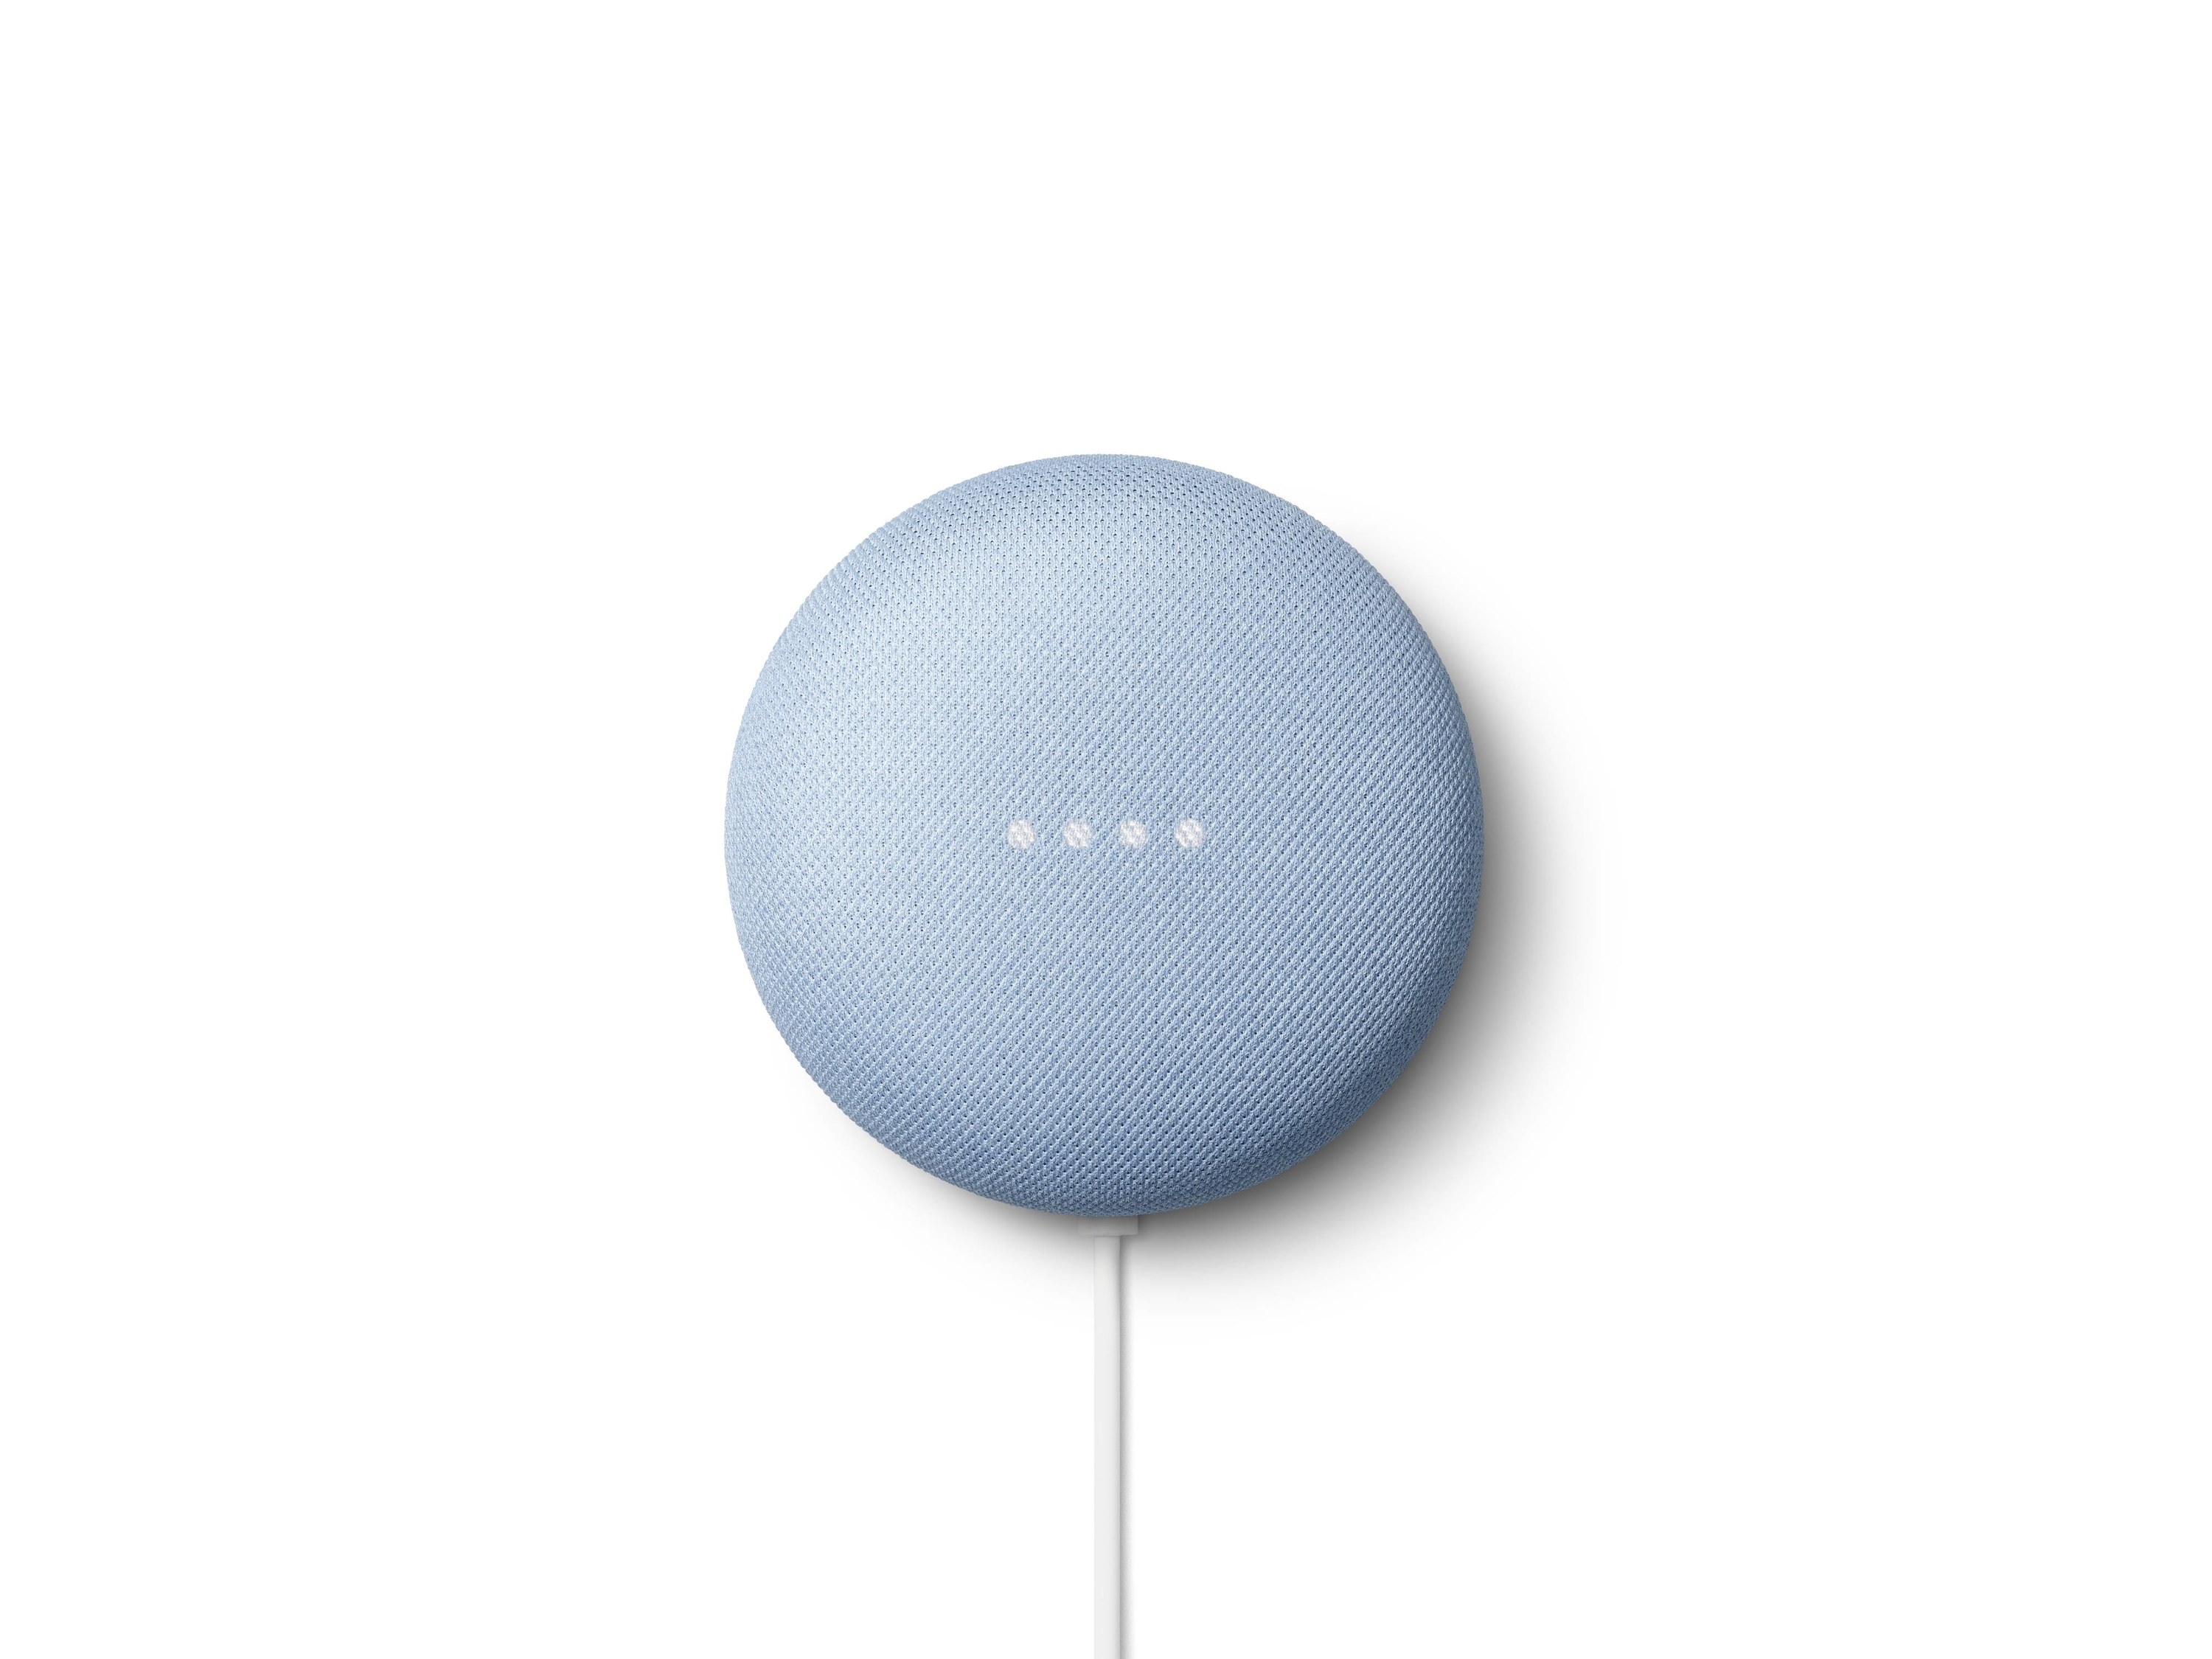 The round blue smart speaker